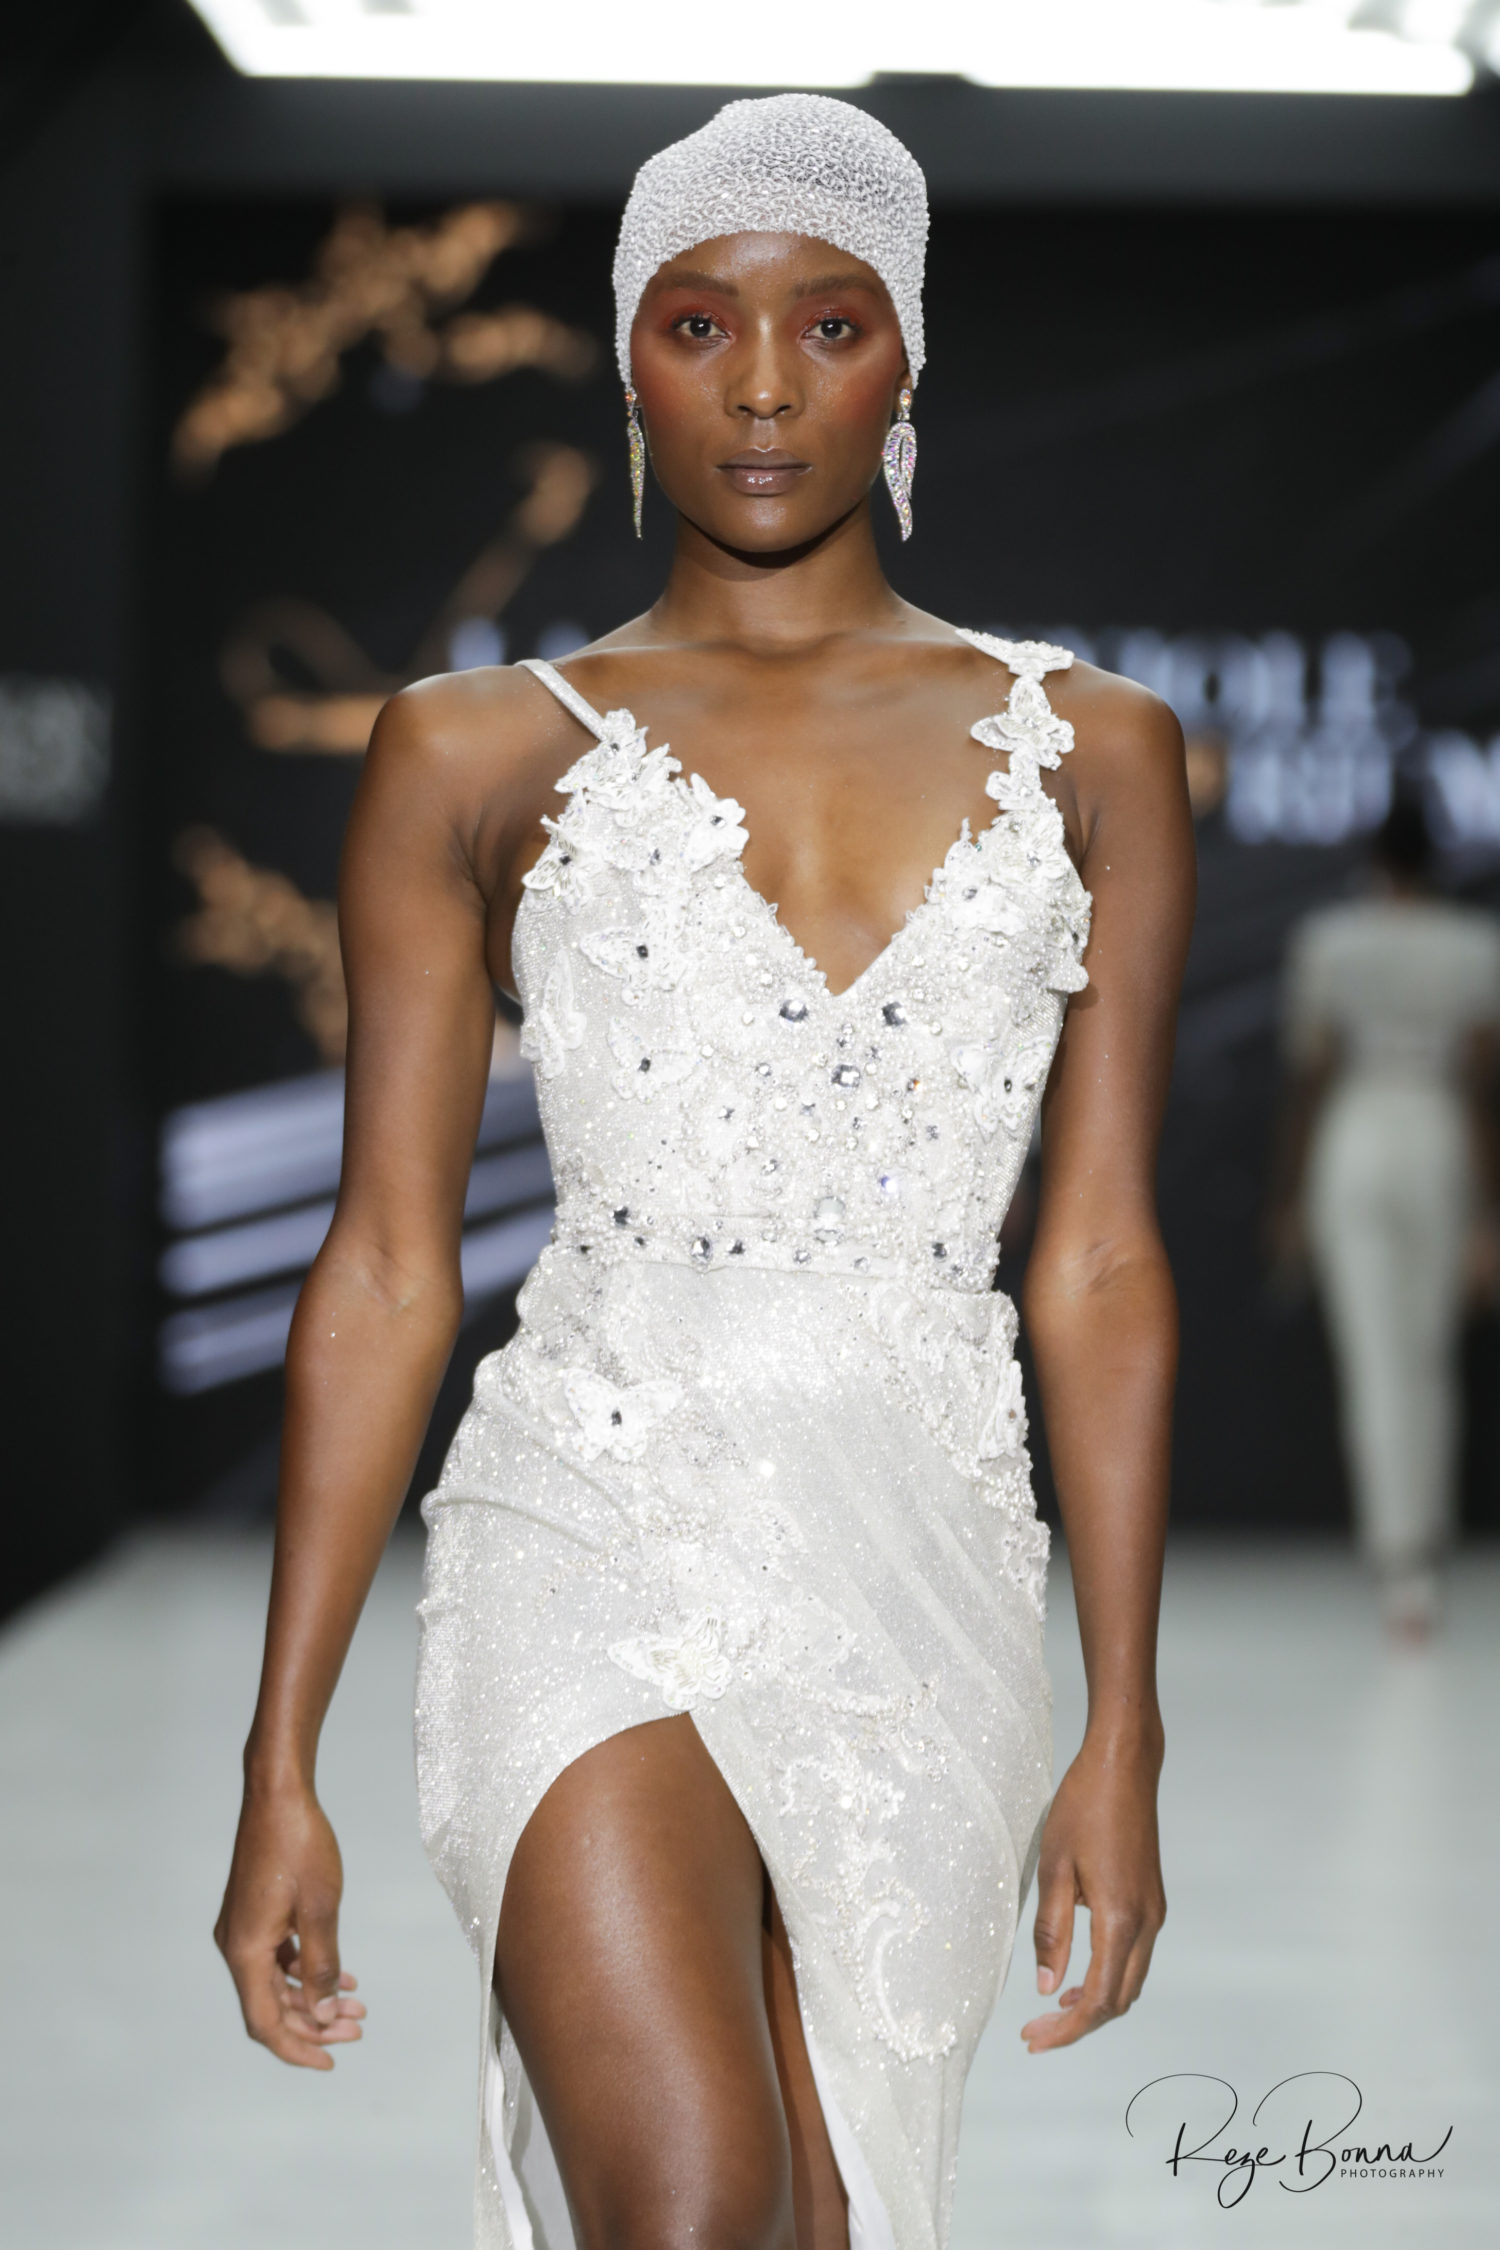 #AFICTFW19 | AFI Capetown Fashion Week L’Art Neviole